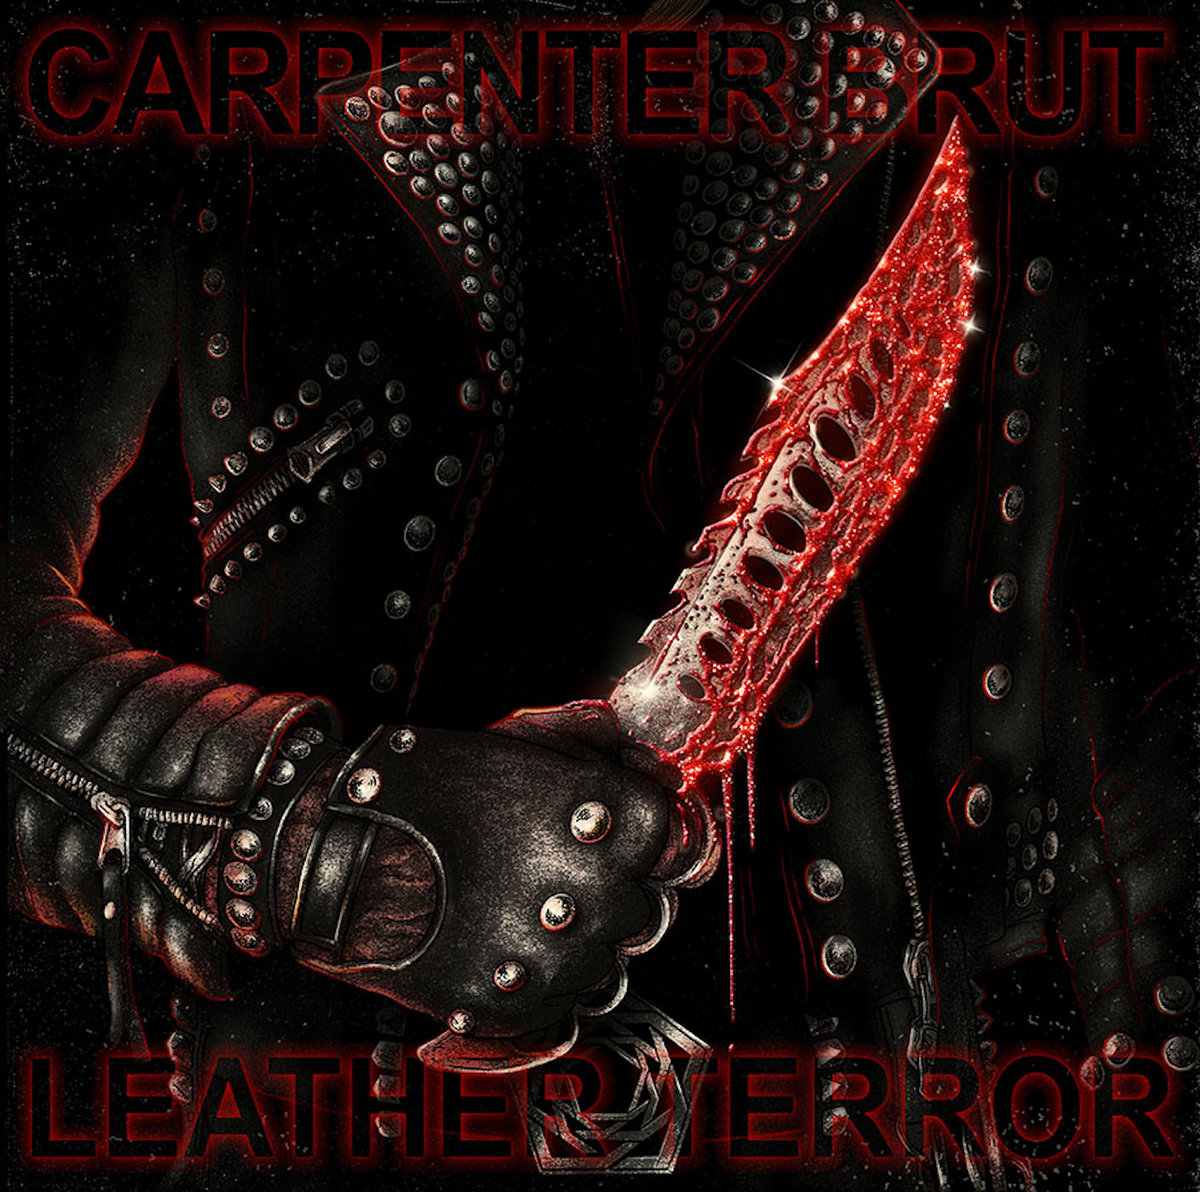 carpemter_brut_leather.jpg